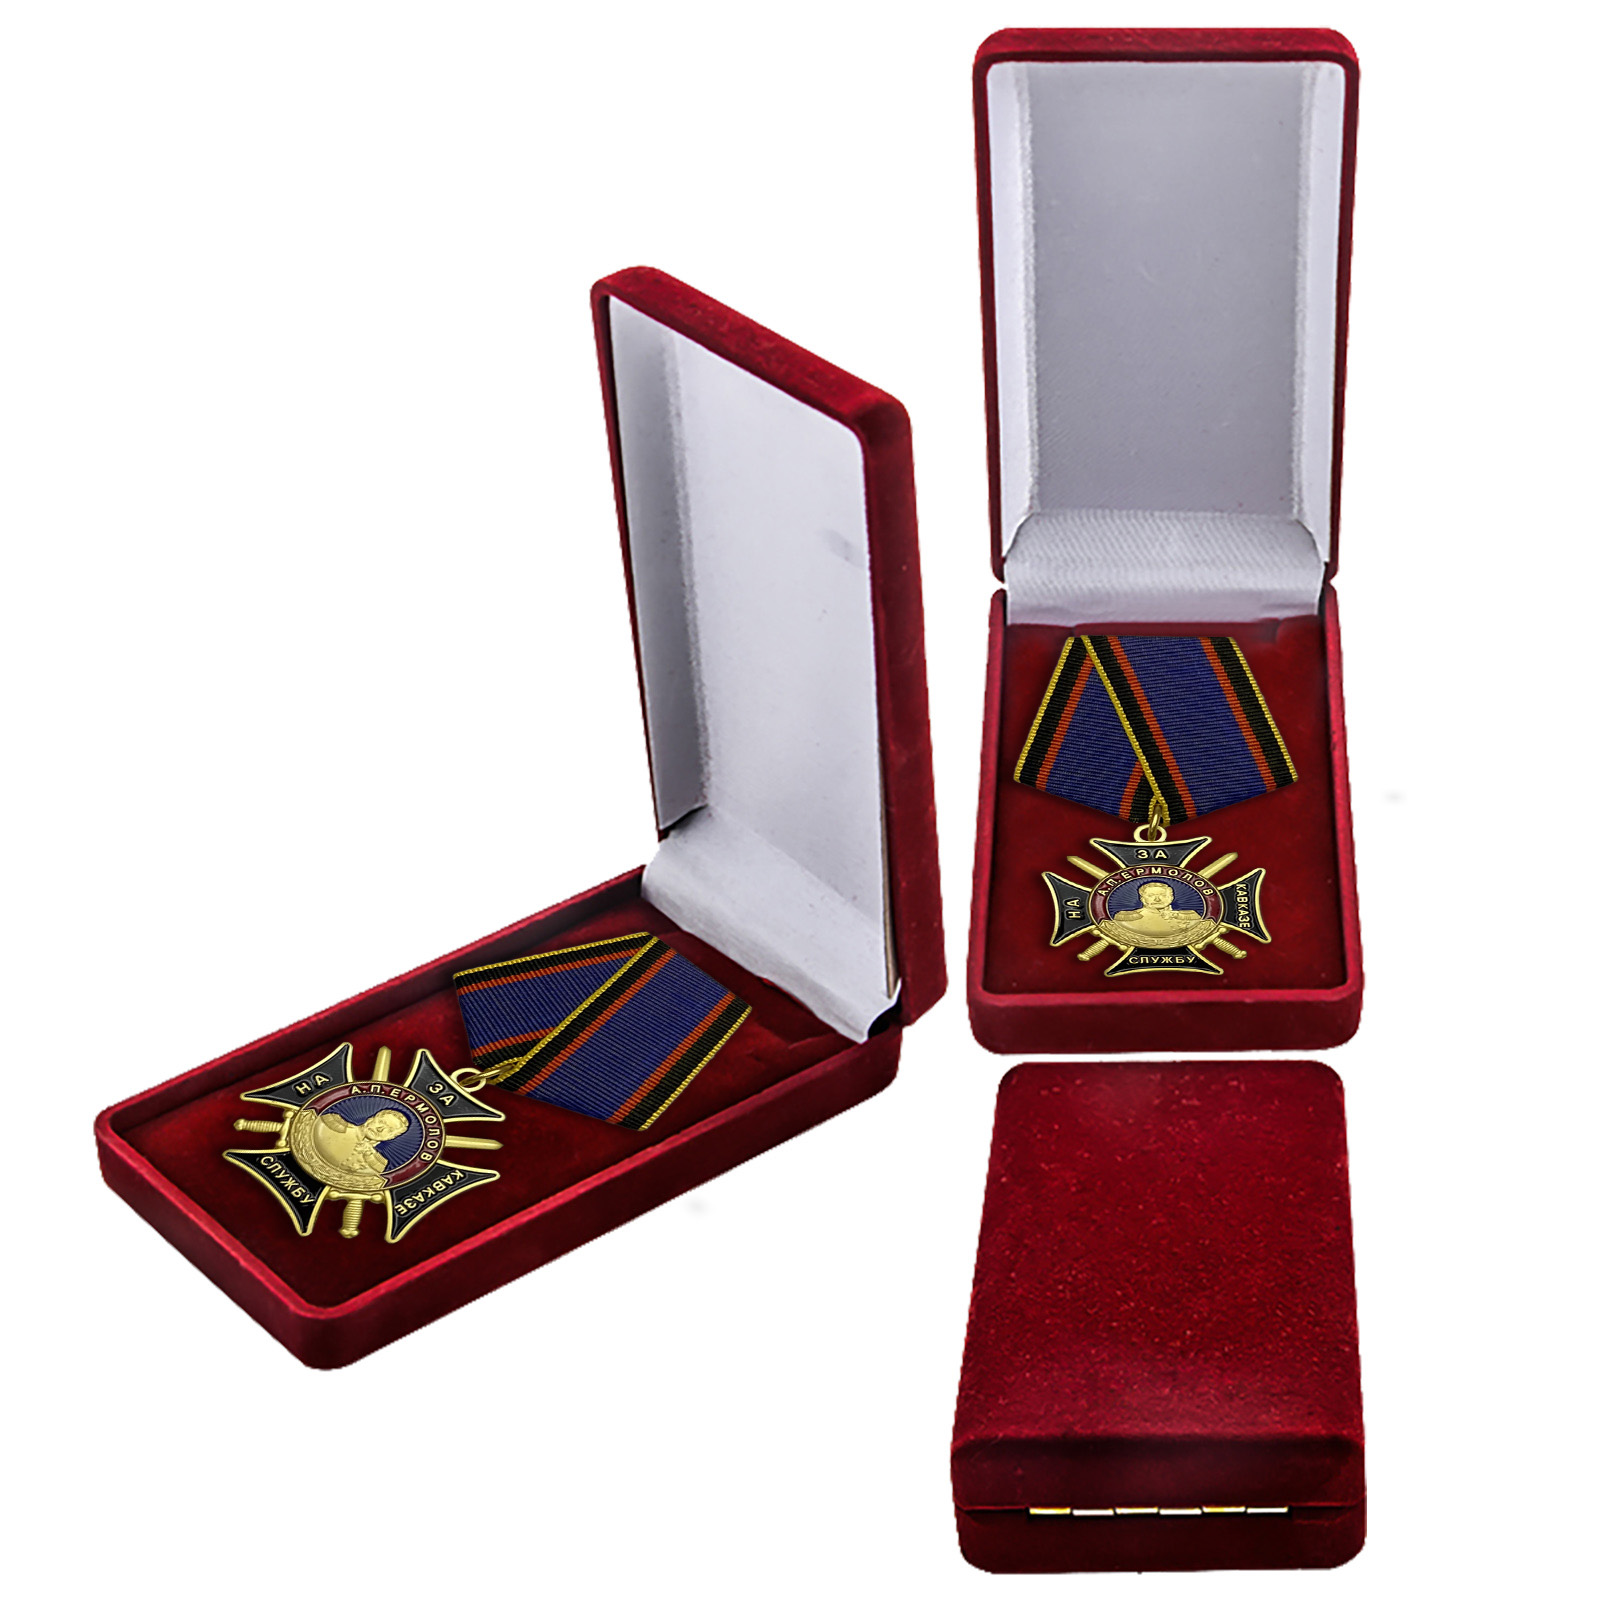 Медаль "За службу на Кавказе" А.П. Ермолова